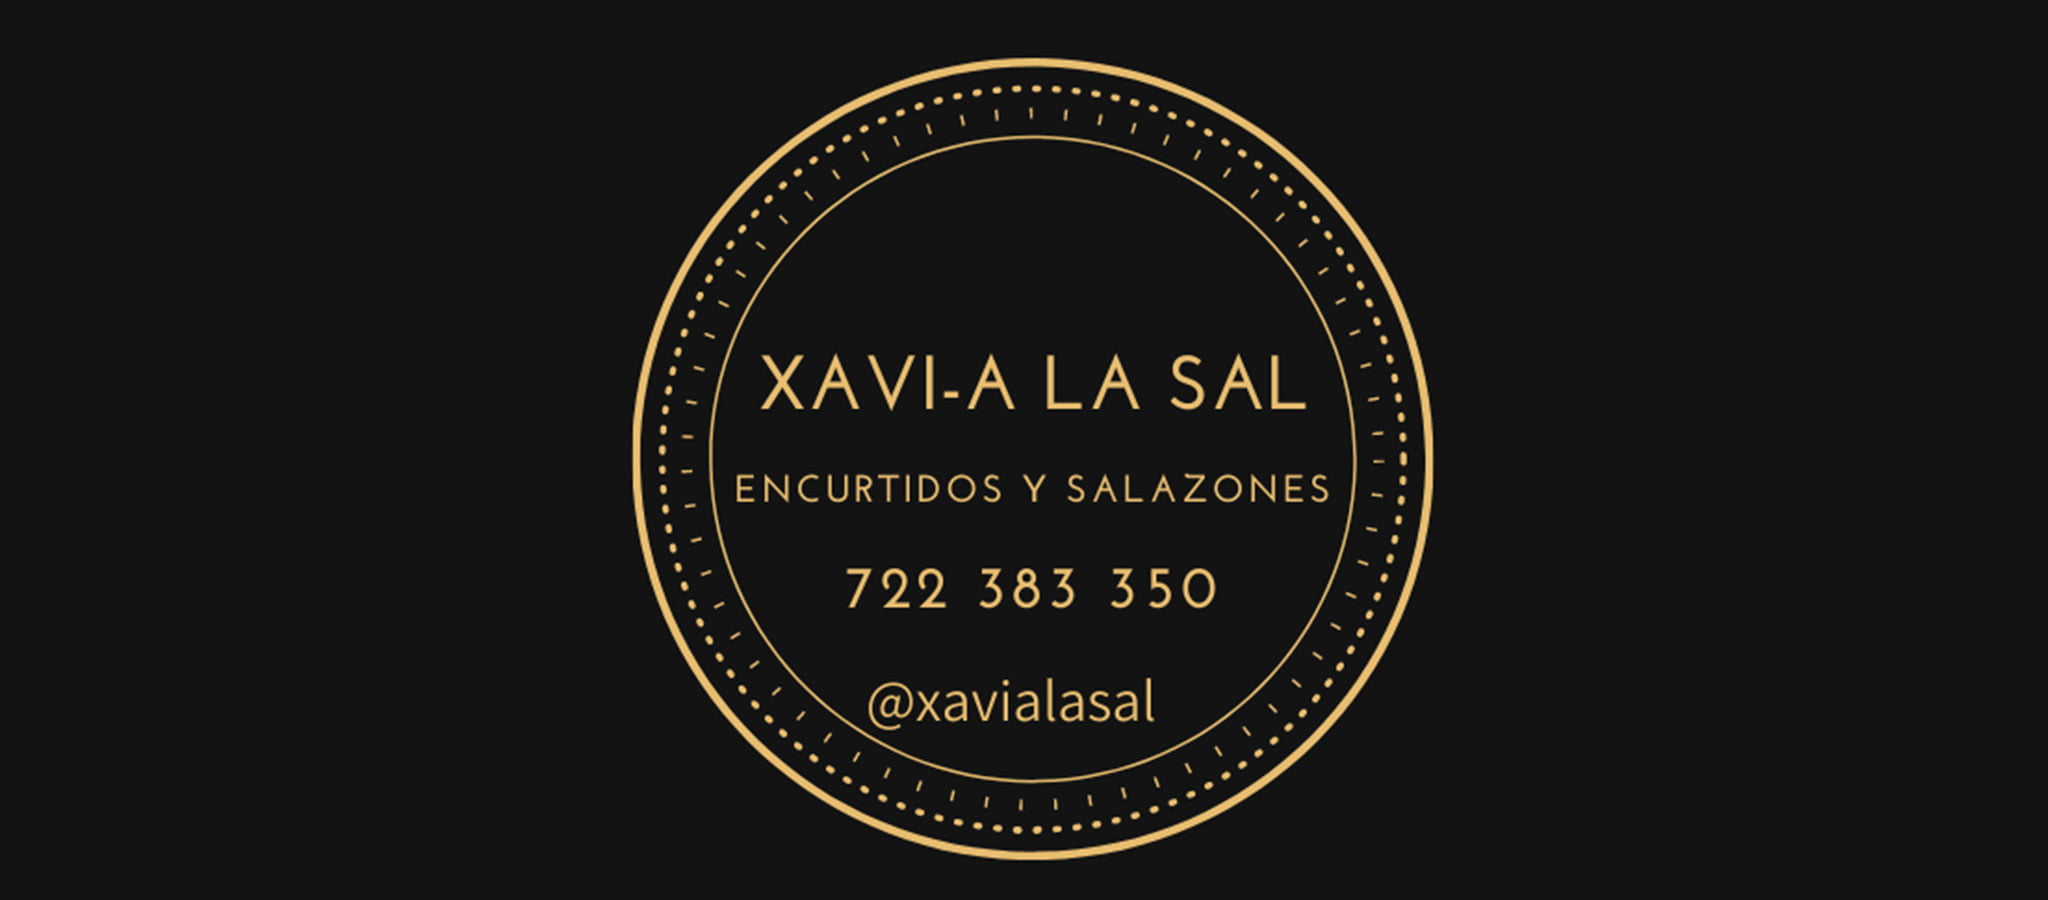 Logotipo de XAVI-A LA SAL